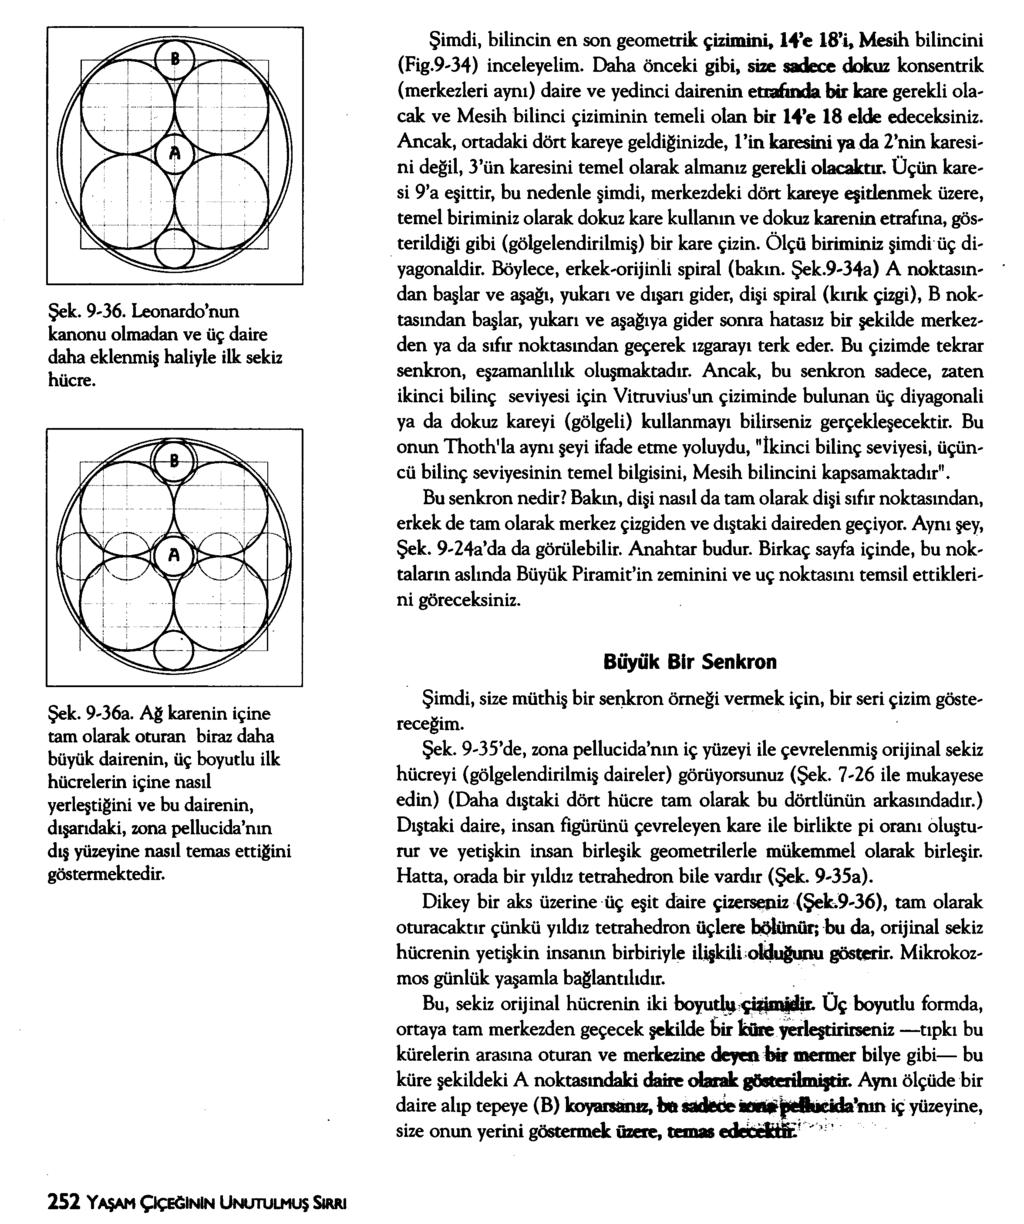 Şek. 9-36. Leonardo nun kanonu olmadan ve üç daire daha eklenmiş haliyle ilk sekiz hücre. Şimdi, bilincin en son geometrik çizimini, 14 e 18 i, Mesih bilincini (Fig.9'34) inceleyelim.